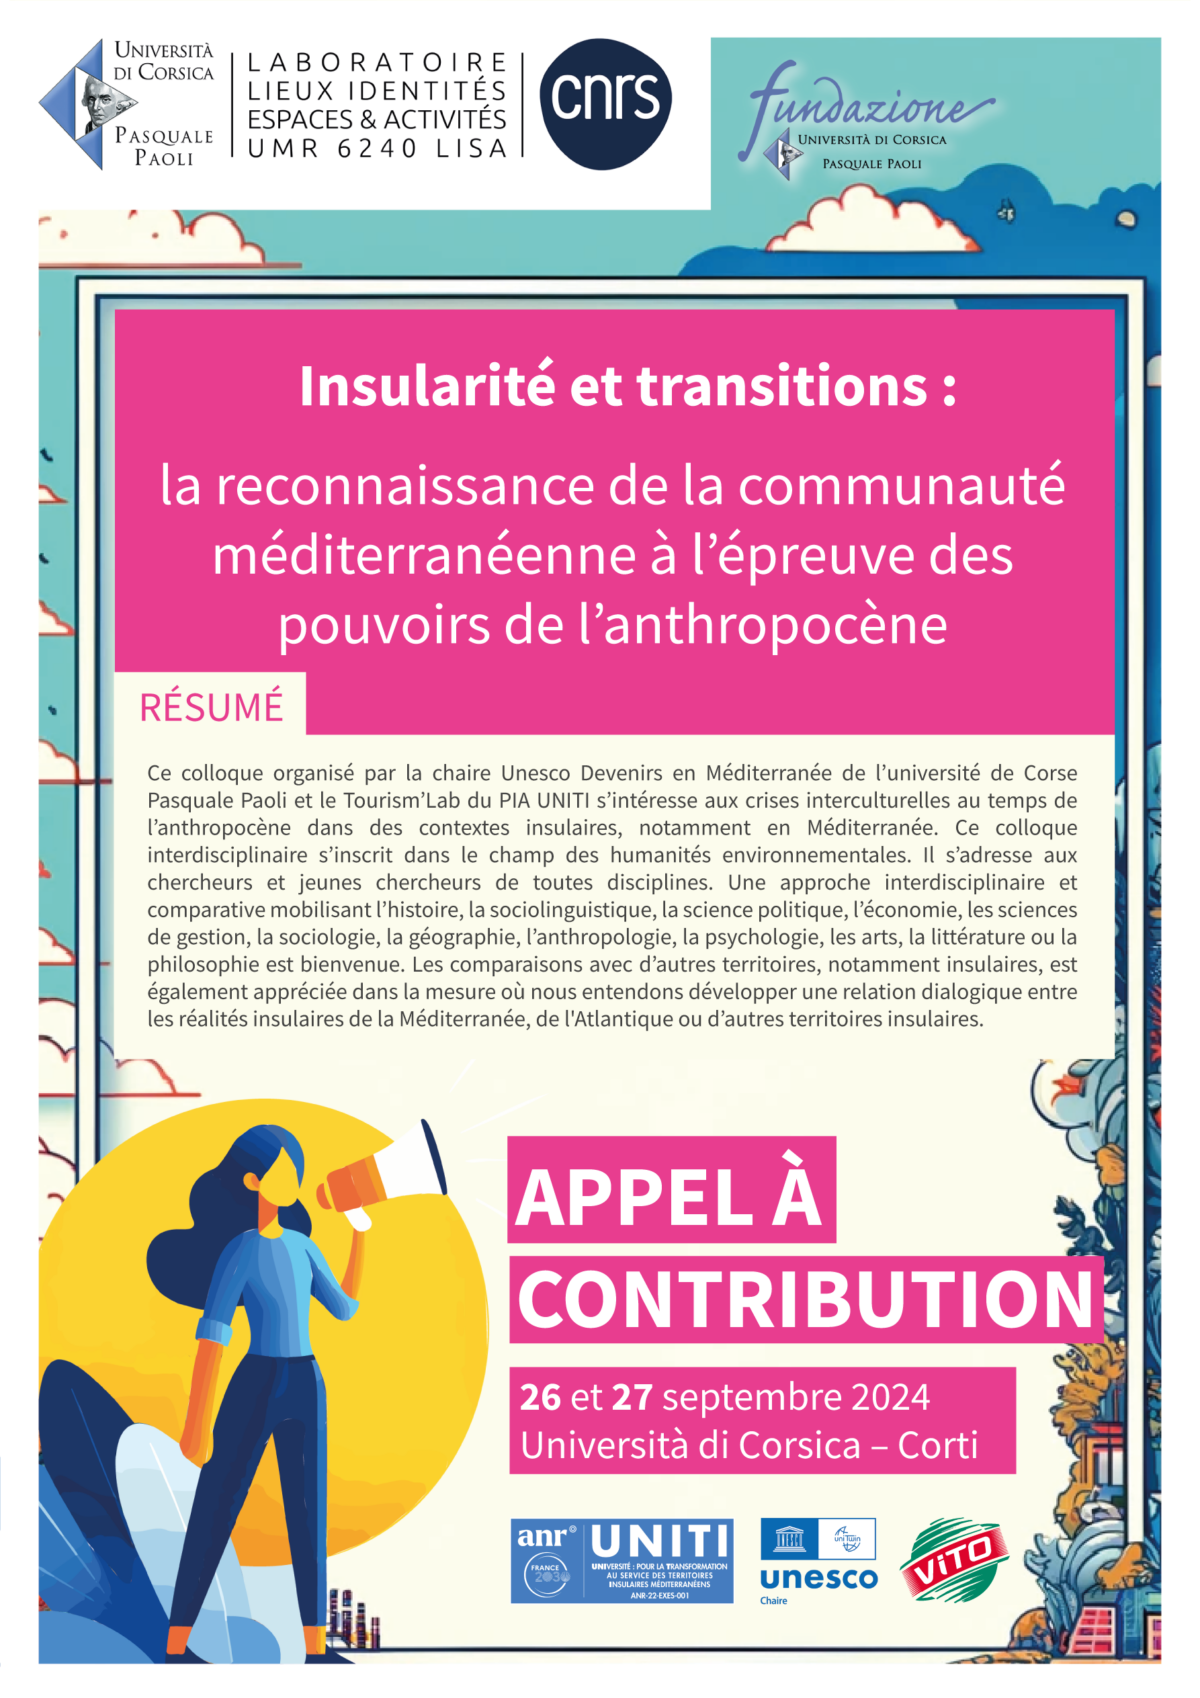 Appel à contributions pour le colloque : « Insularité et transitions » organisé le 26 et 27 septembre 2024 à Università di Corsica, Corti.